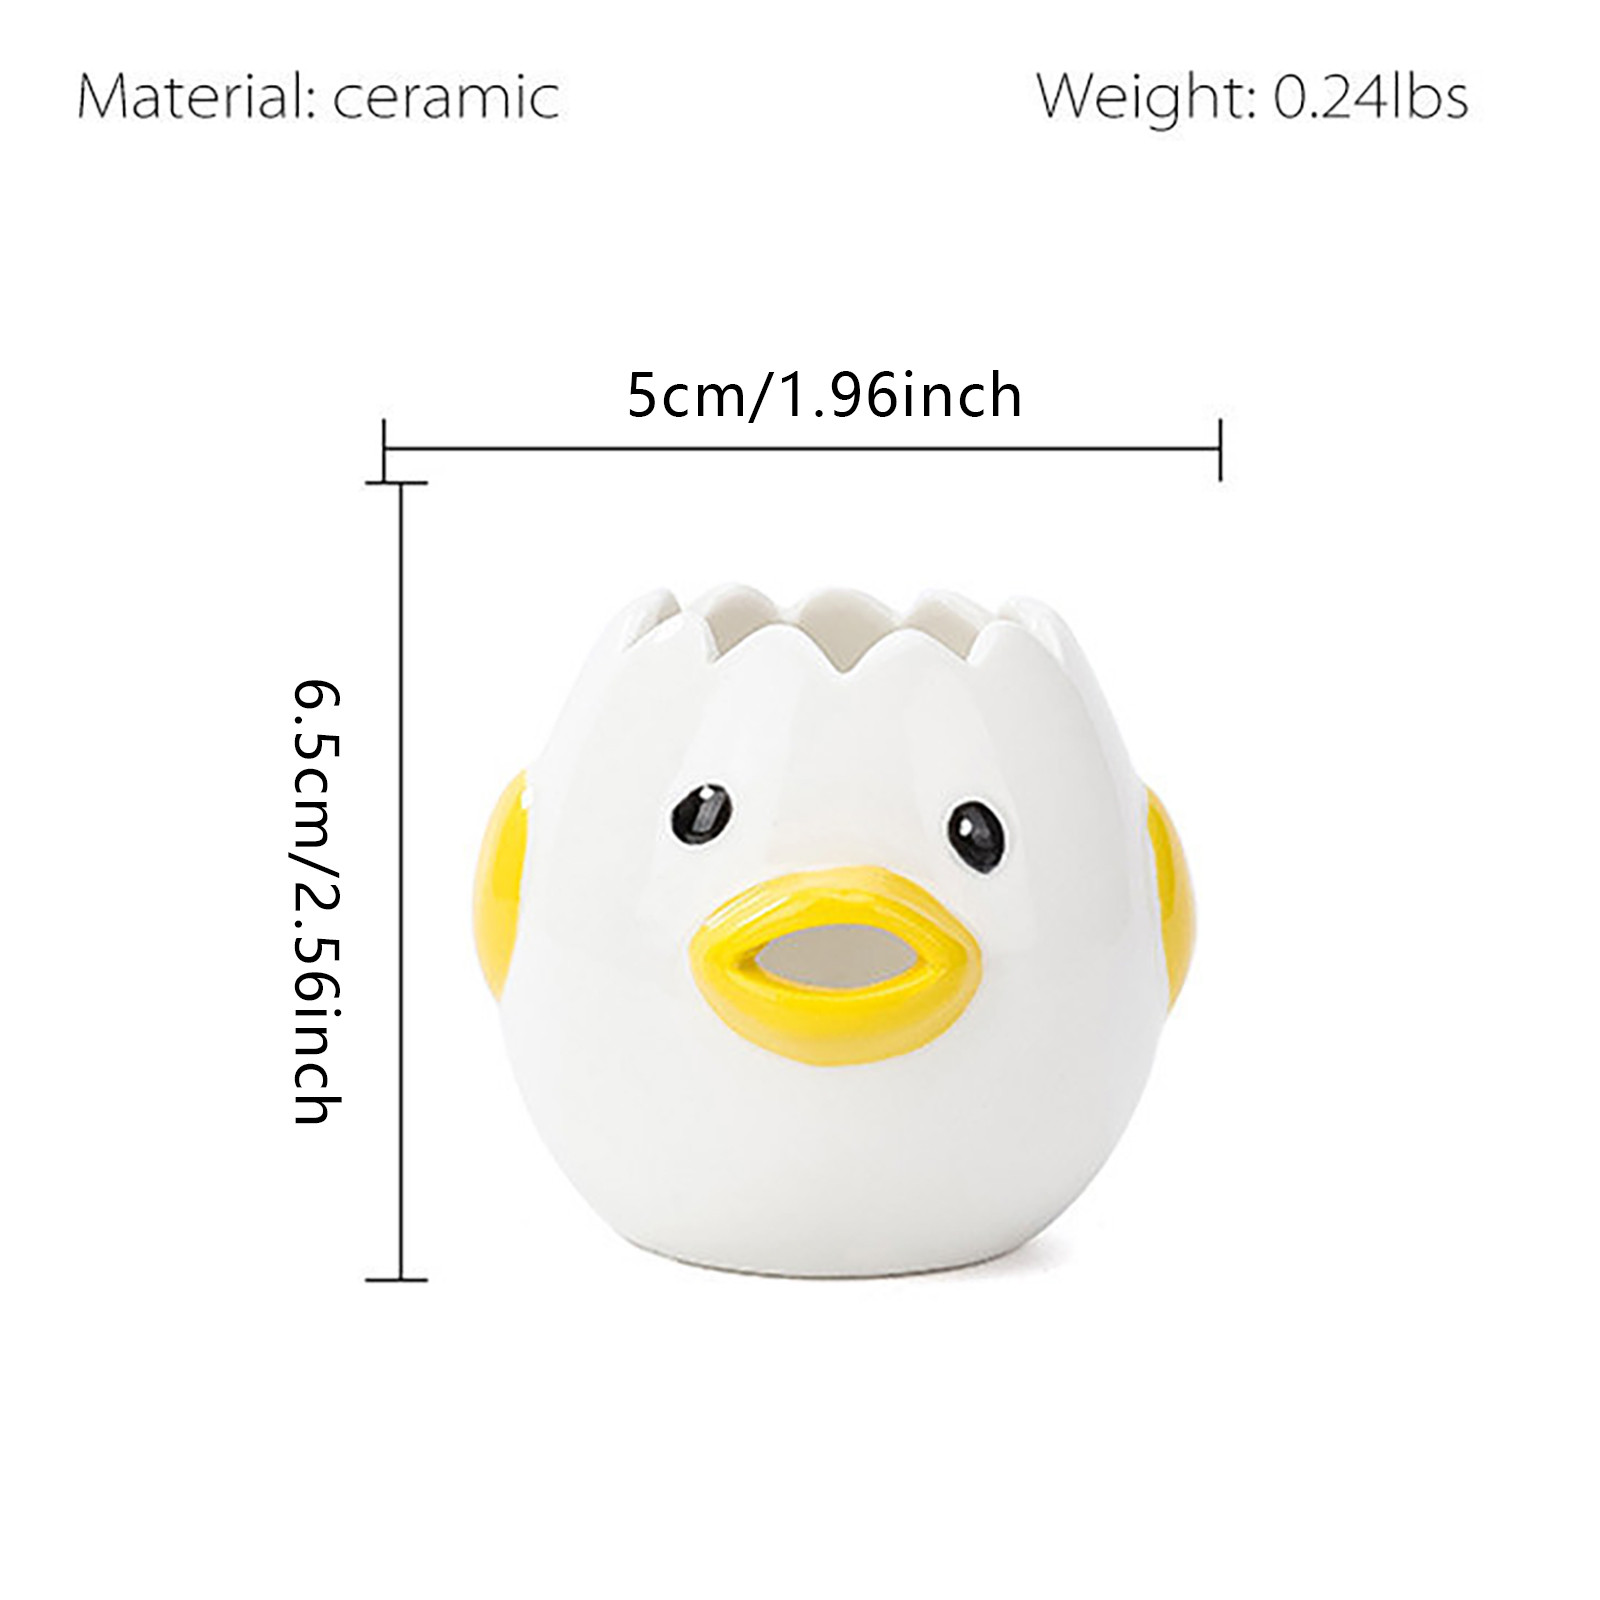 Creative Egg Separator Cute Little Chicken Ceramic egg White Separator Egg Yolk Protein Separator Filter Baking Tools Egg Tools